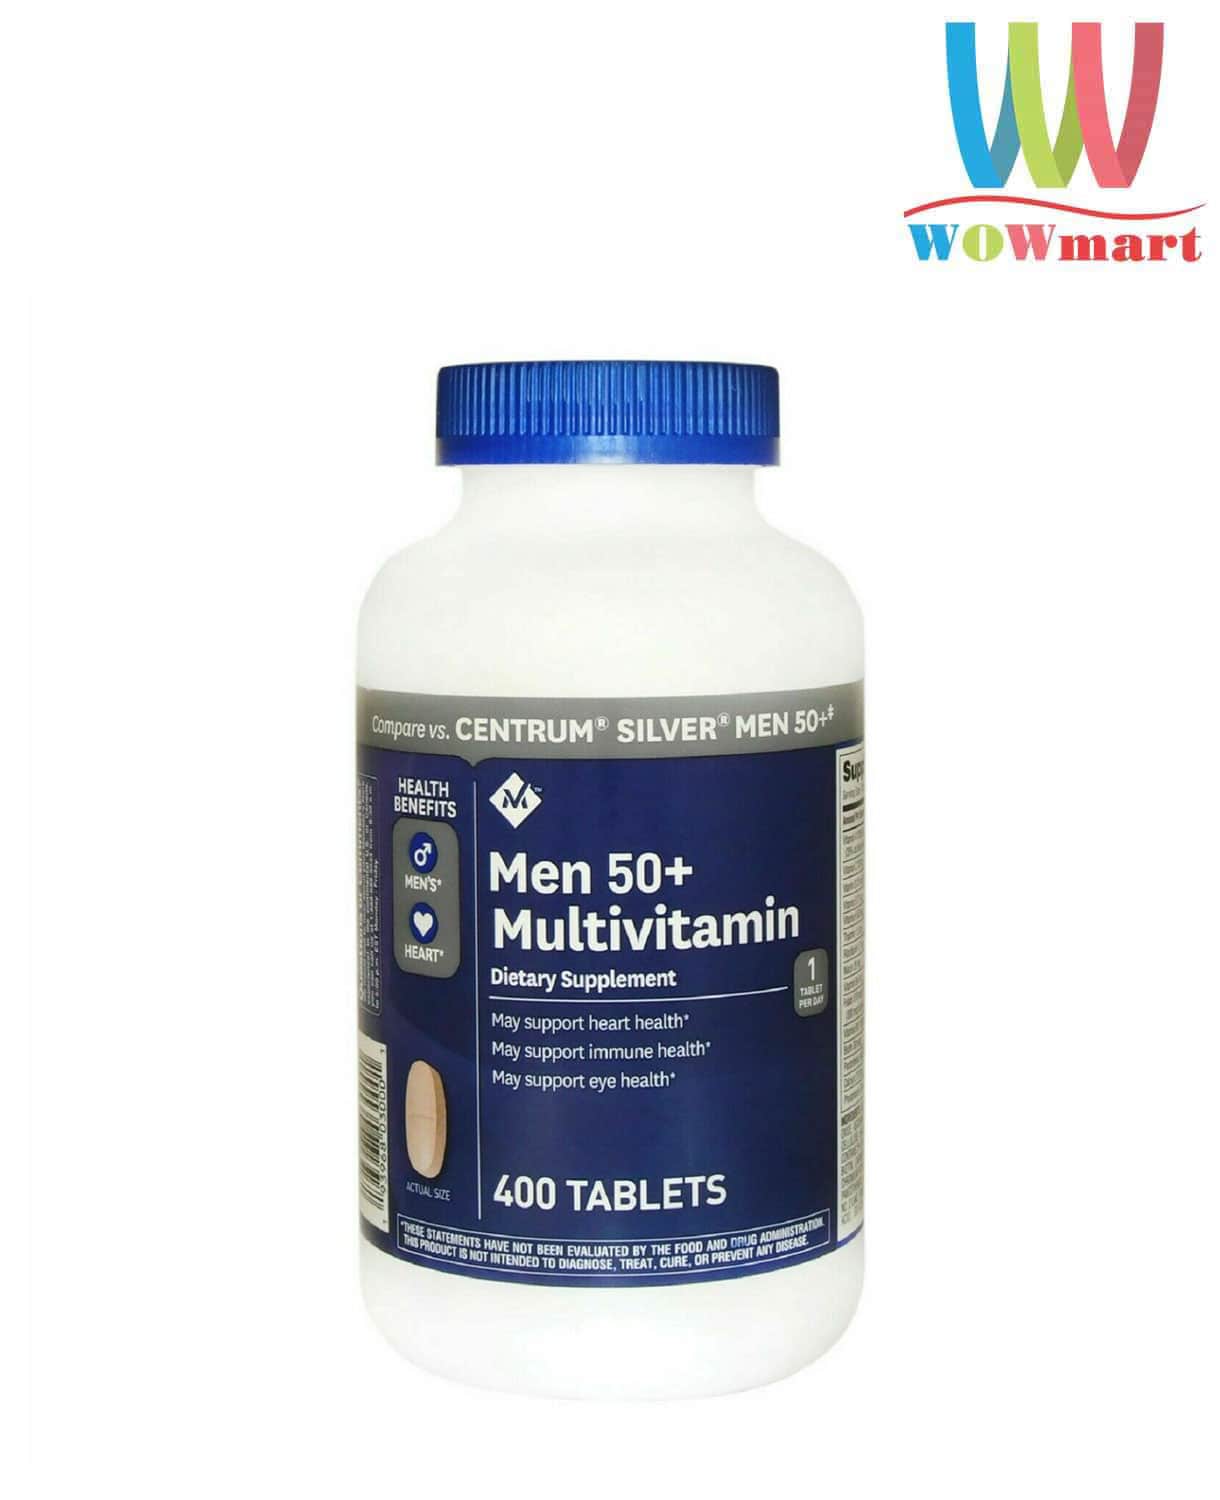 Vitamin tổng hợp cho nam giới trên 50 tuổi Member's Mark Men 50+  Multivitamin 400 Tablets – Wowmart VN | 100% hàng ngoại nhập